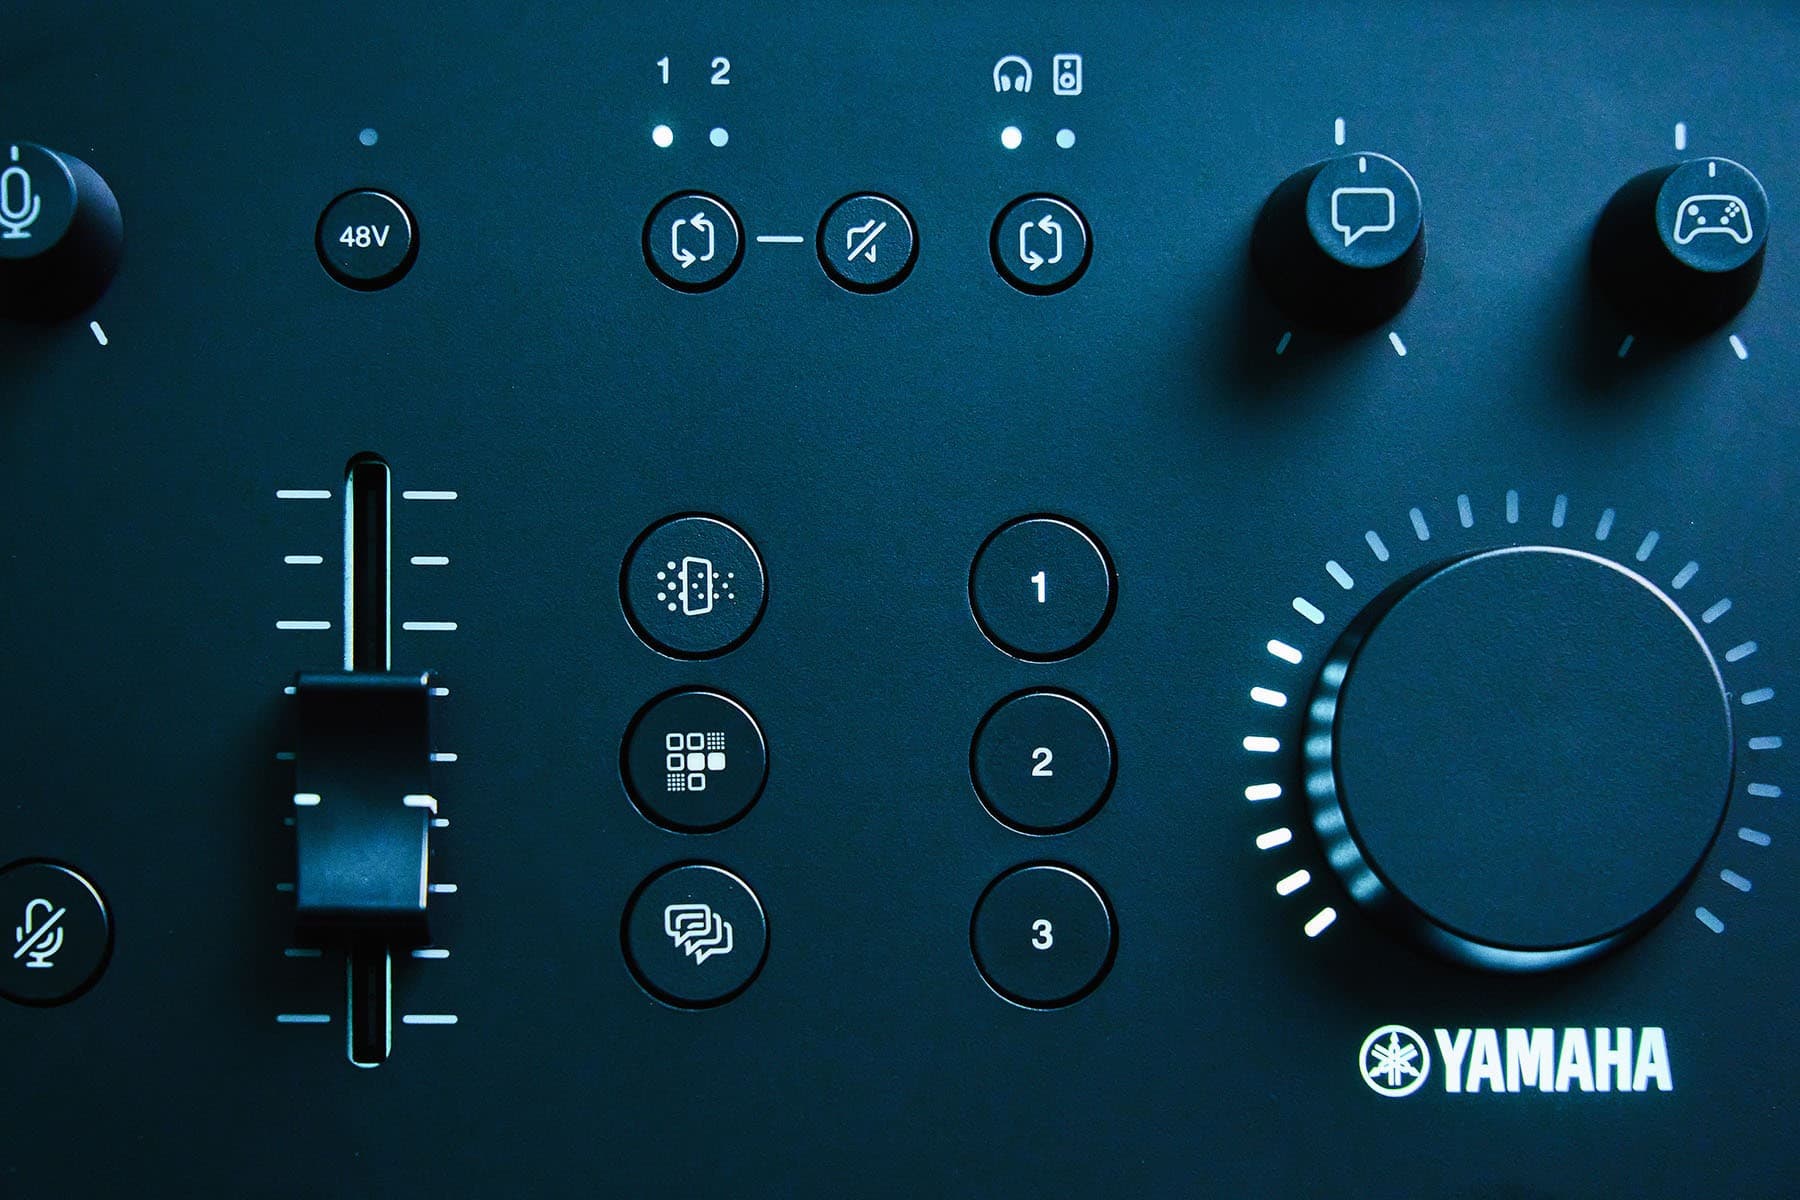 央配備的顆效果鍵，左邊三顆語音聊天效果按鍵由上而下分別可以為你的聲音提供變聲效果、收發器/無線電聲音效果、消音嗶聲和一鍵回音效果；至於右邊三個則是對應於遊戲音效，自由切換集模式、環繞音效模式 EQ 選擇，而這部分可配 Yamaha ZG Controller (ZG 控制器) 專屬軟體程式的 Mic Effect 和 Game Effect 介面來分別進行客製調整。